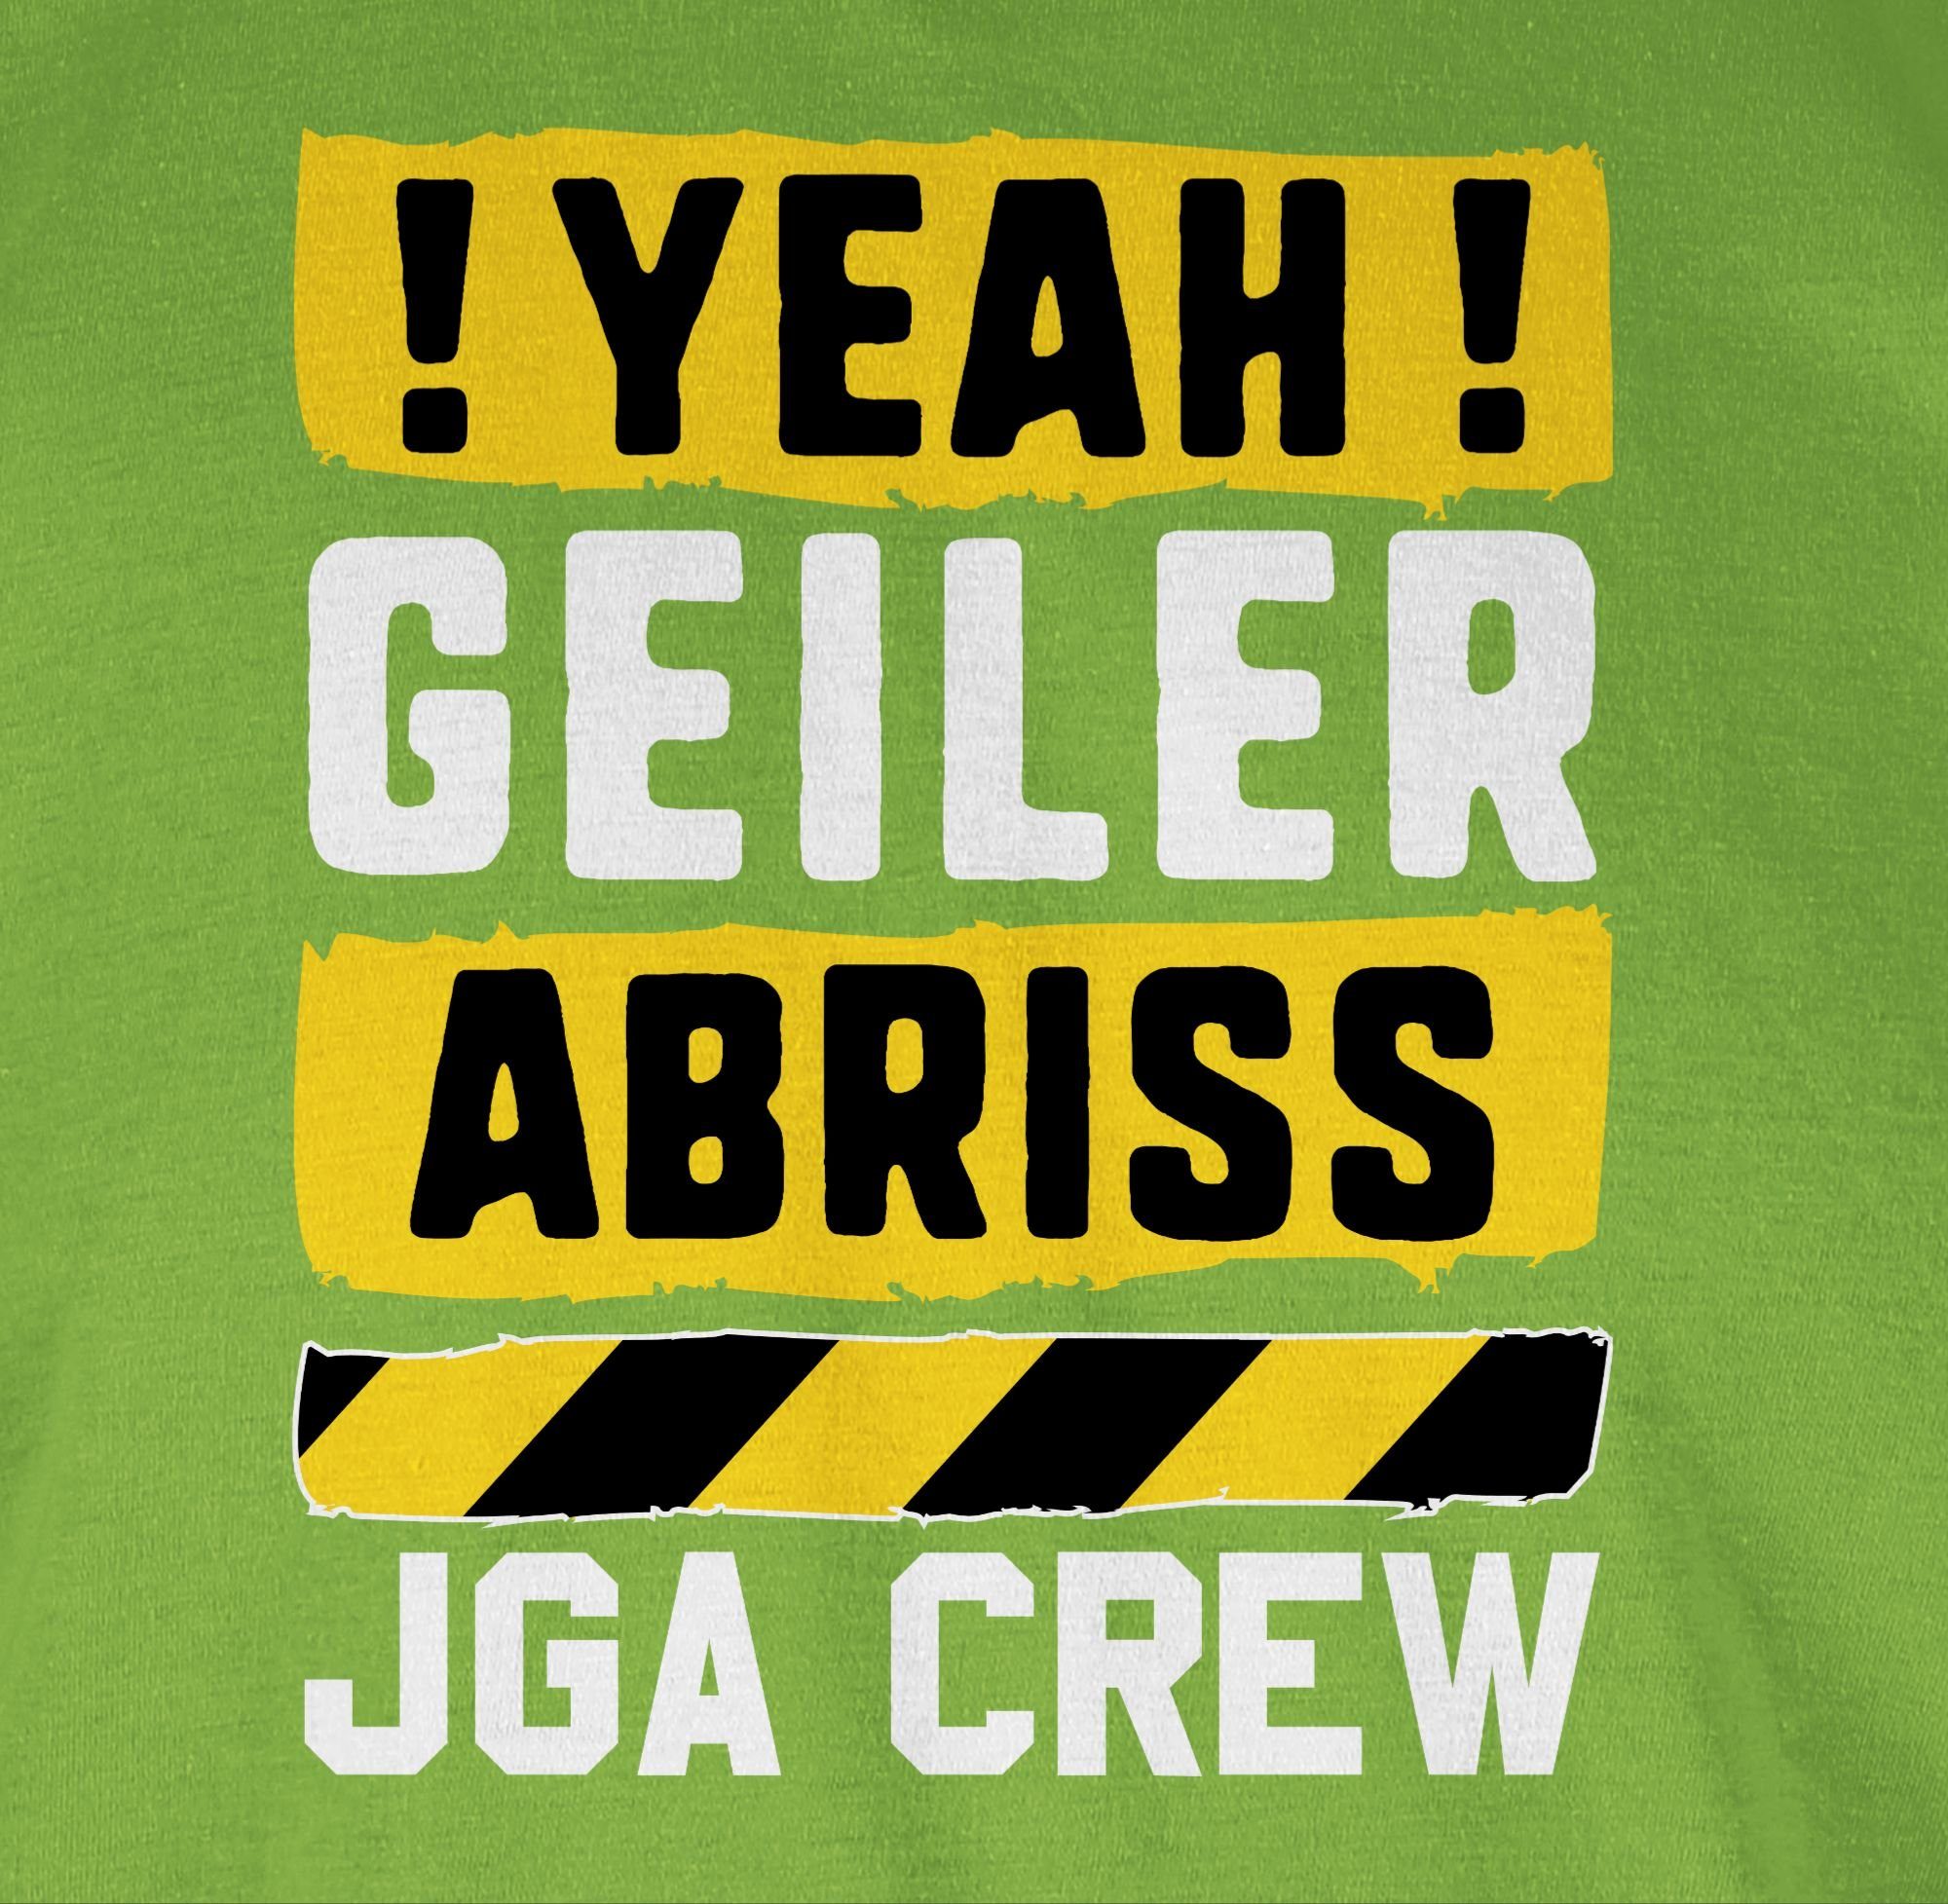 Männer Abriss gelb weiß geiler Yeah 03 Crew Shirtracer Hellgrün JGA - JGA T-Shirt